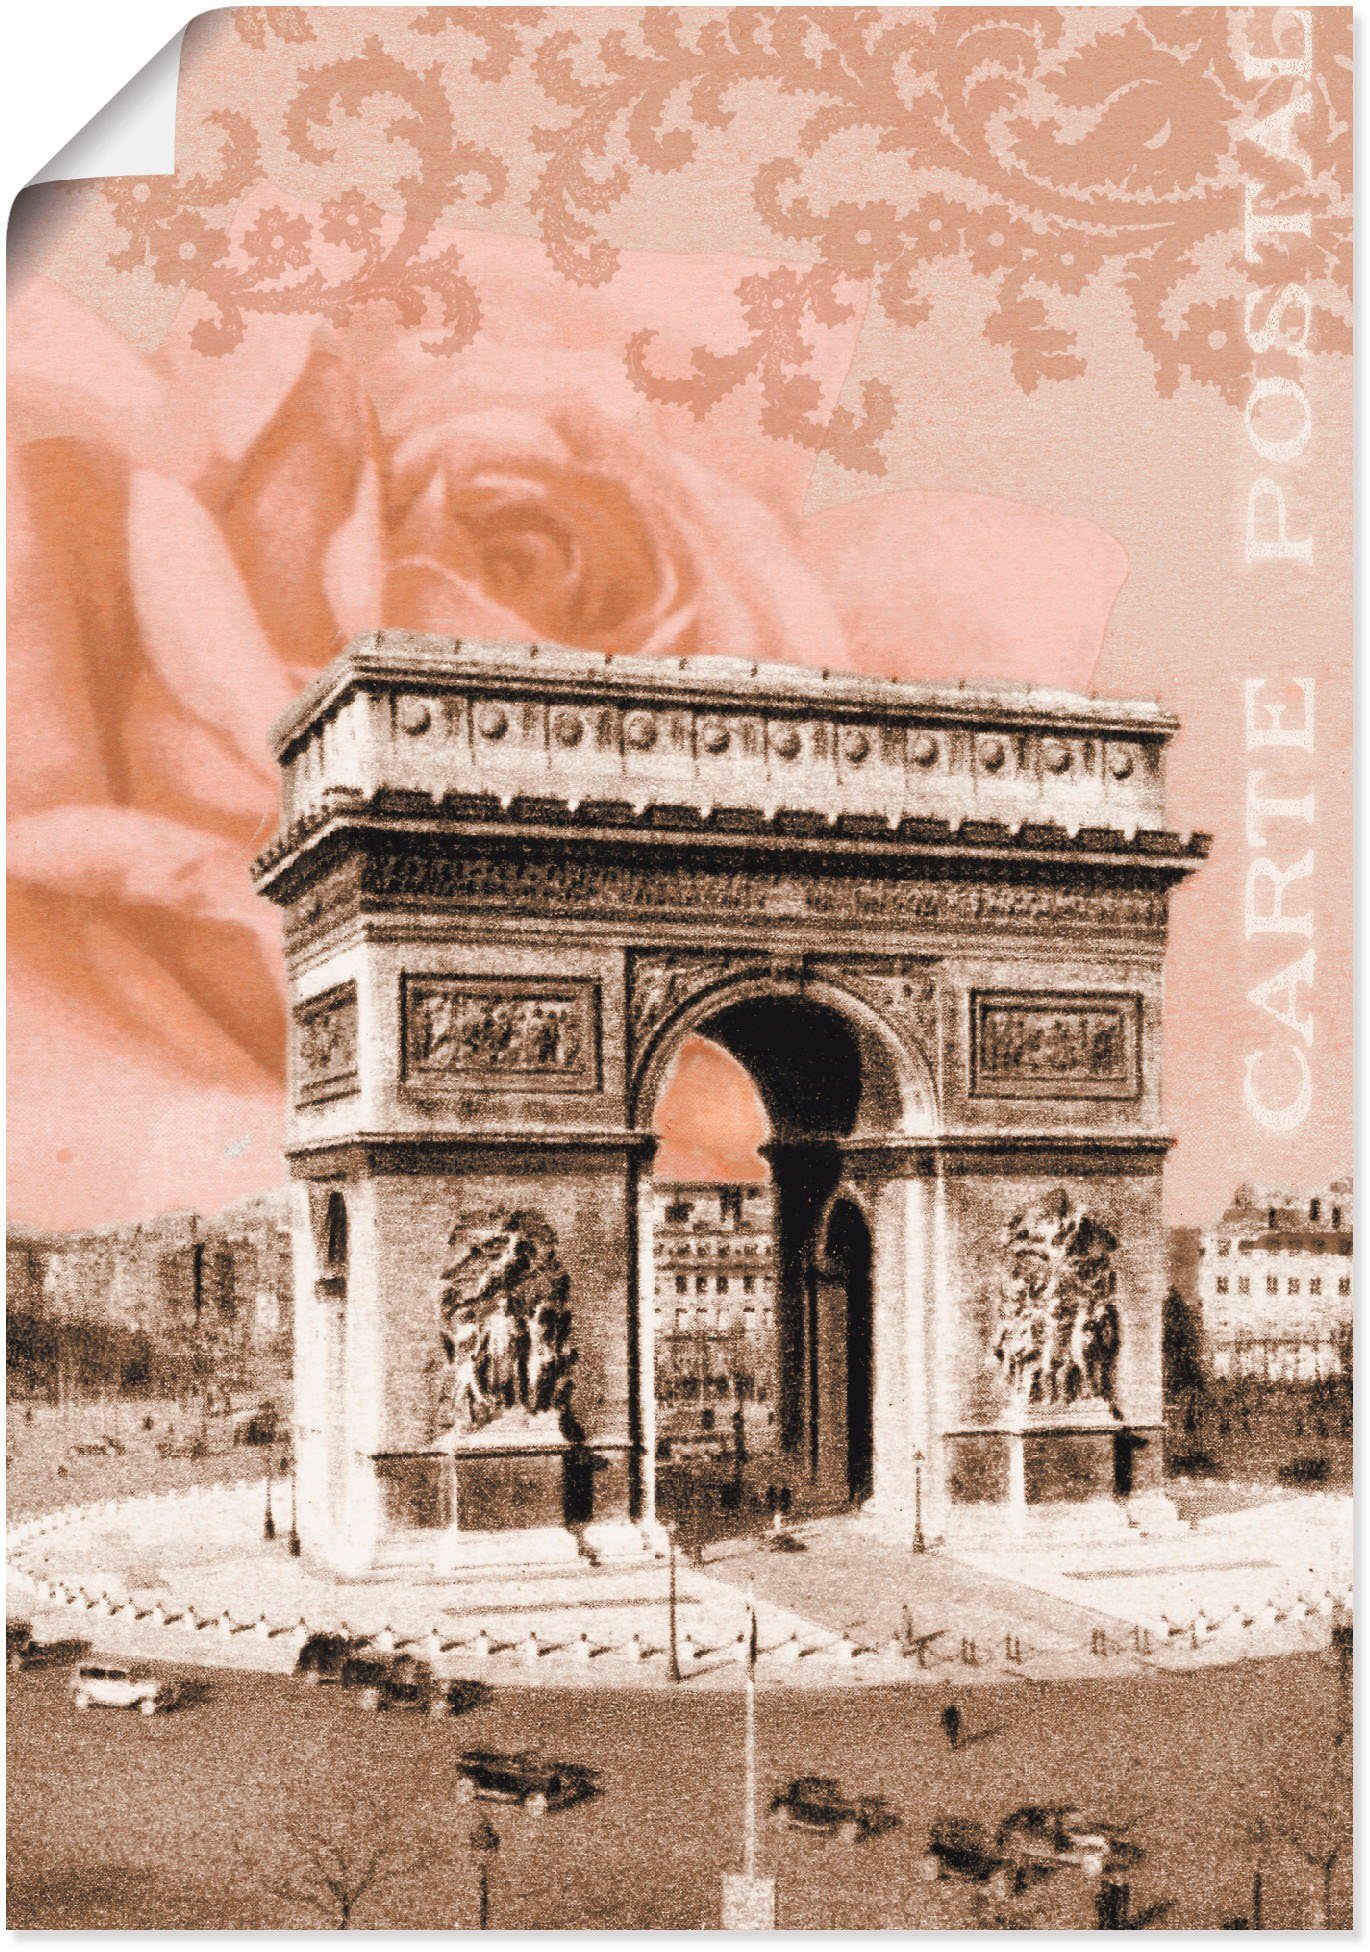 Artland Artprint Parijs - Arc de Triomphe in vele afmetingen & productsoorten - artprint van aluminium / artprint voor buiten, artprint op linnen, poster, muursticker / wandfolie o